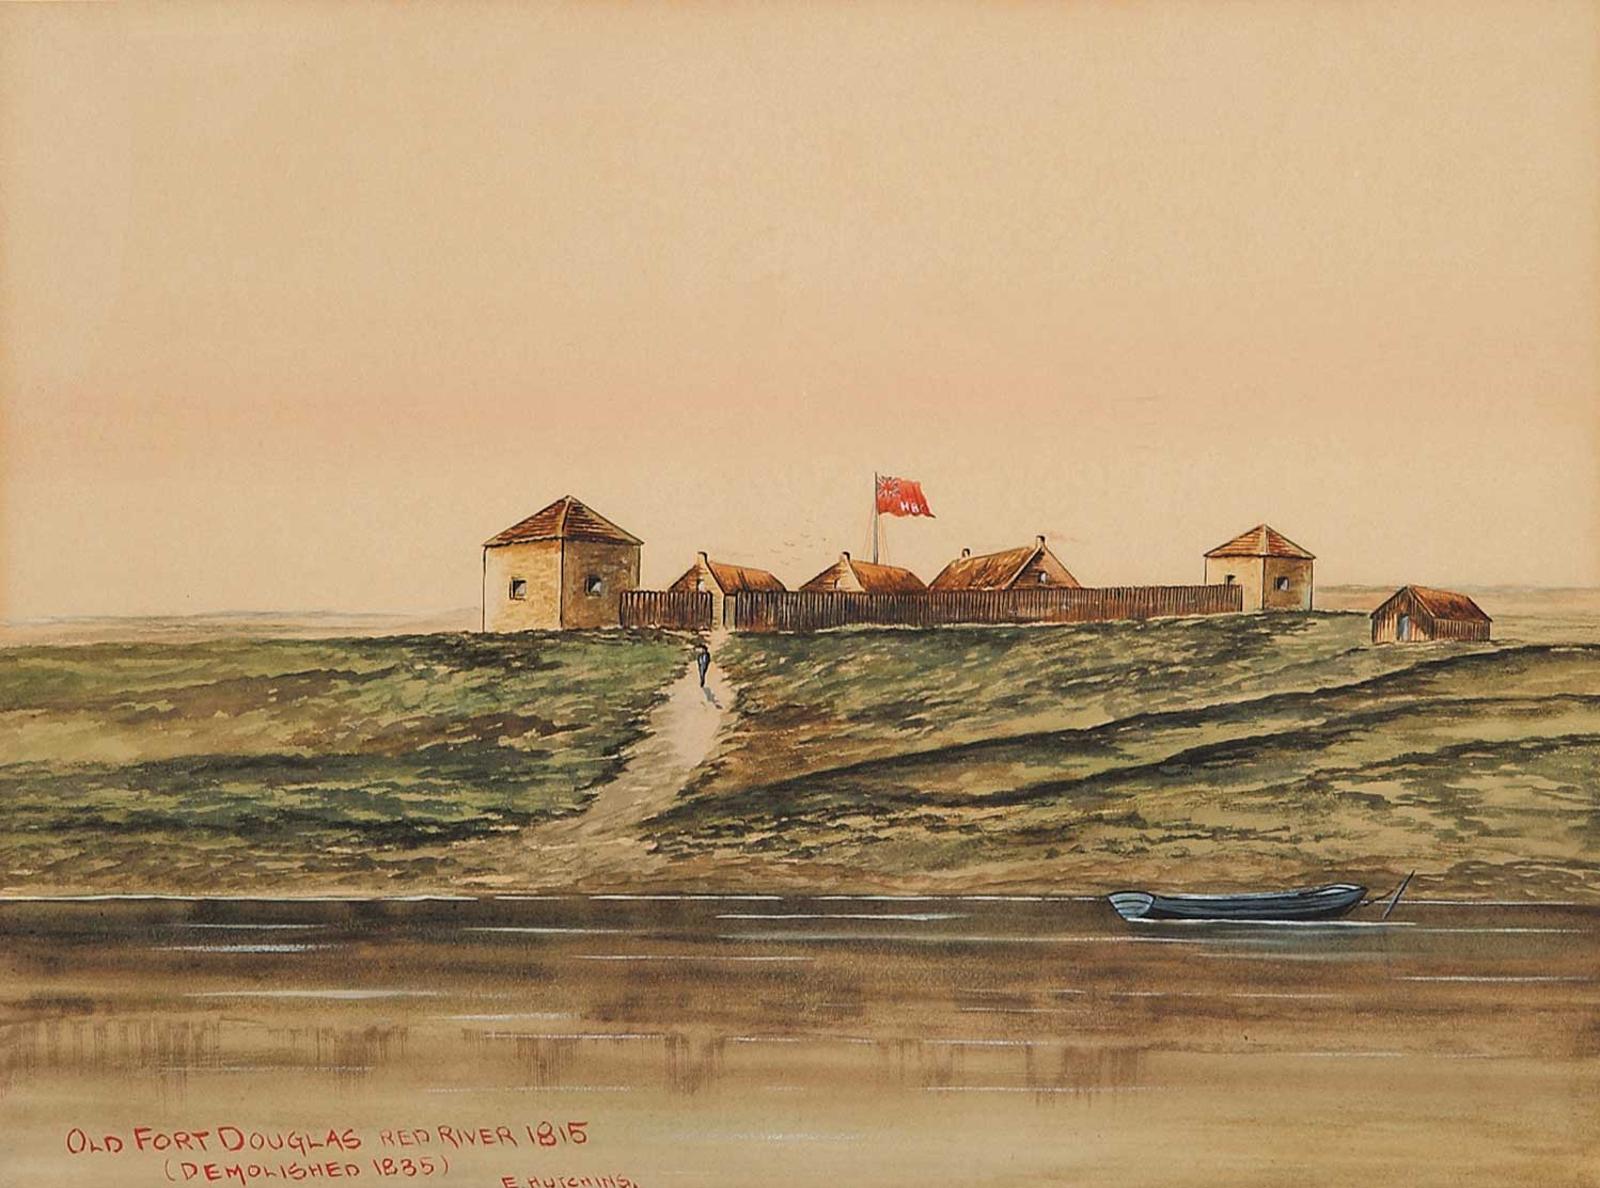 Ernest John Hutchins (1914-1912) - Old Fort Douglas, Red River, 1815 [demolished 1835]